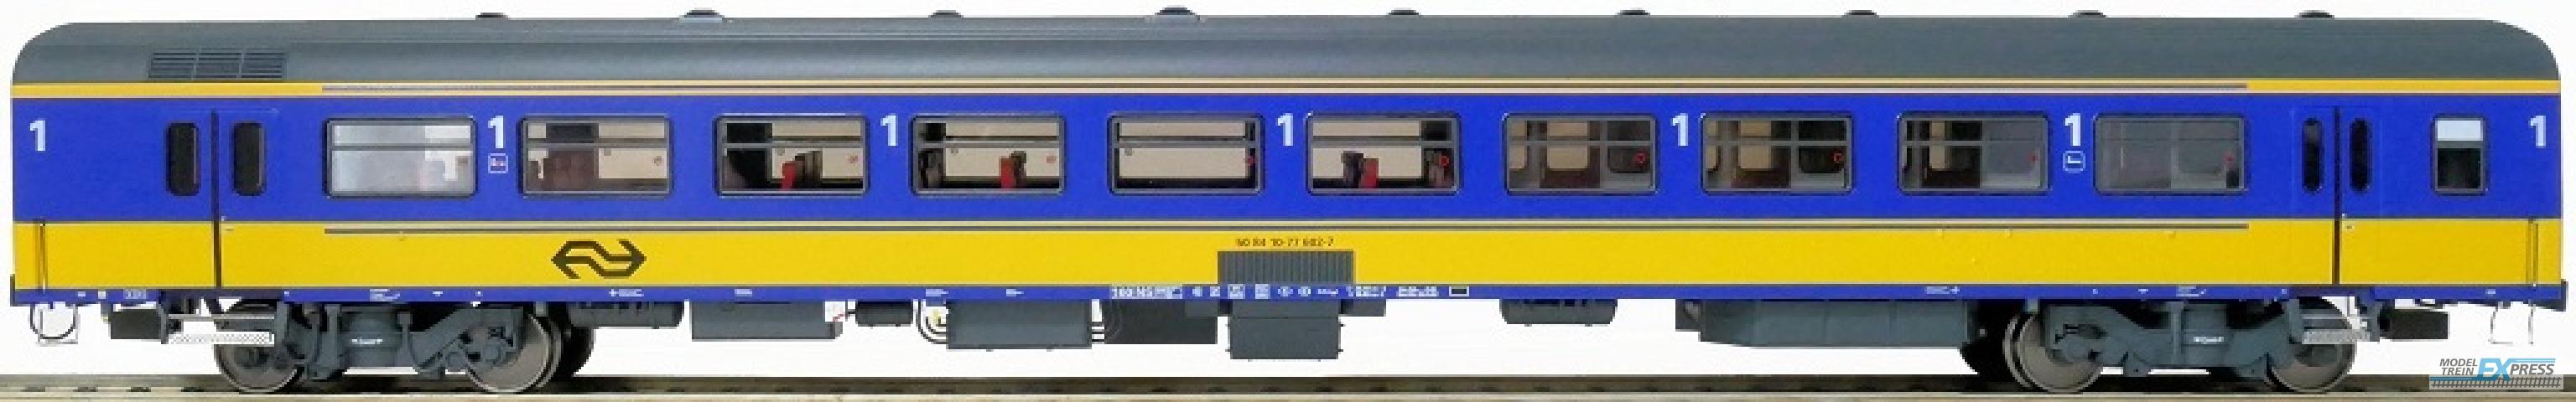 Exact-train 11166 NS ICR (Originalversion) für den Inlandseinsatz Reisezugwagen A (Farbe Gelb / Blau) mit Beleuchtung und Figuren, Ep. IV